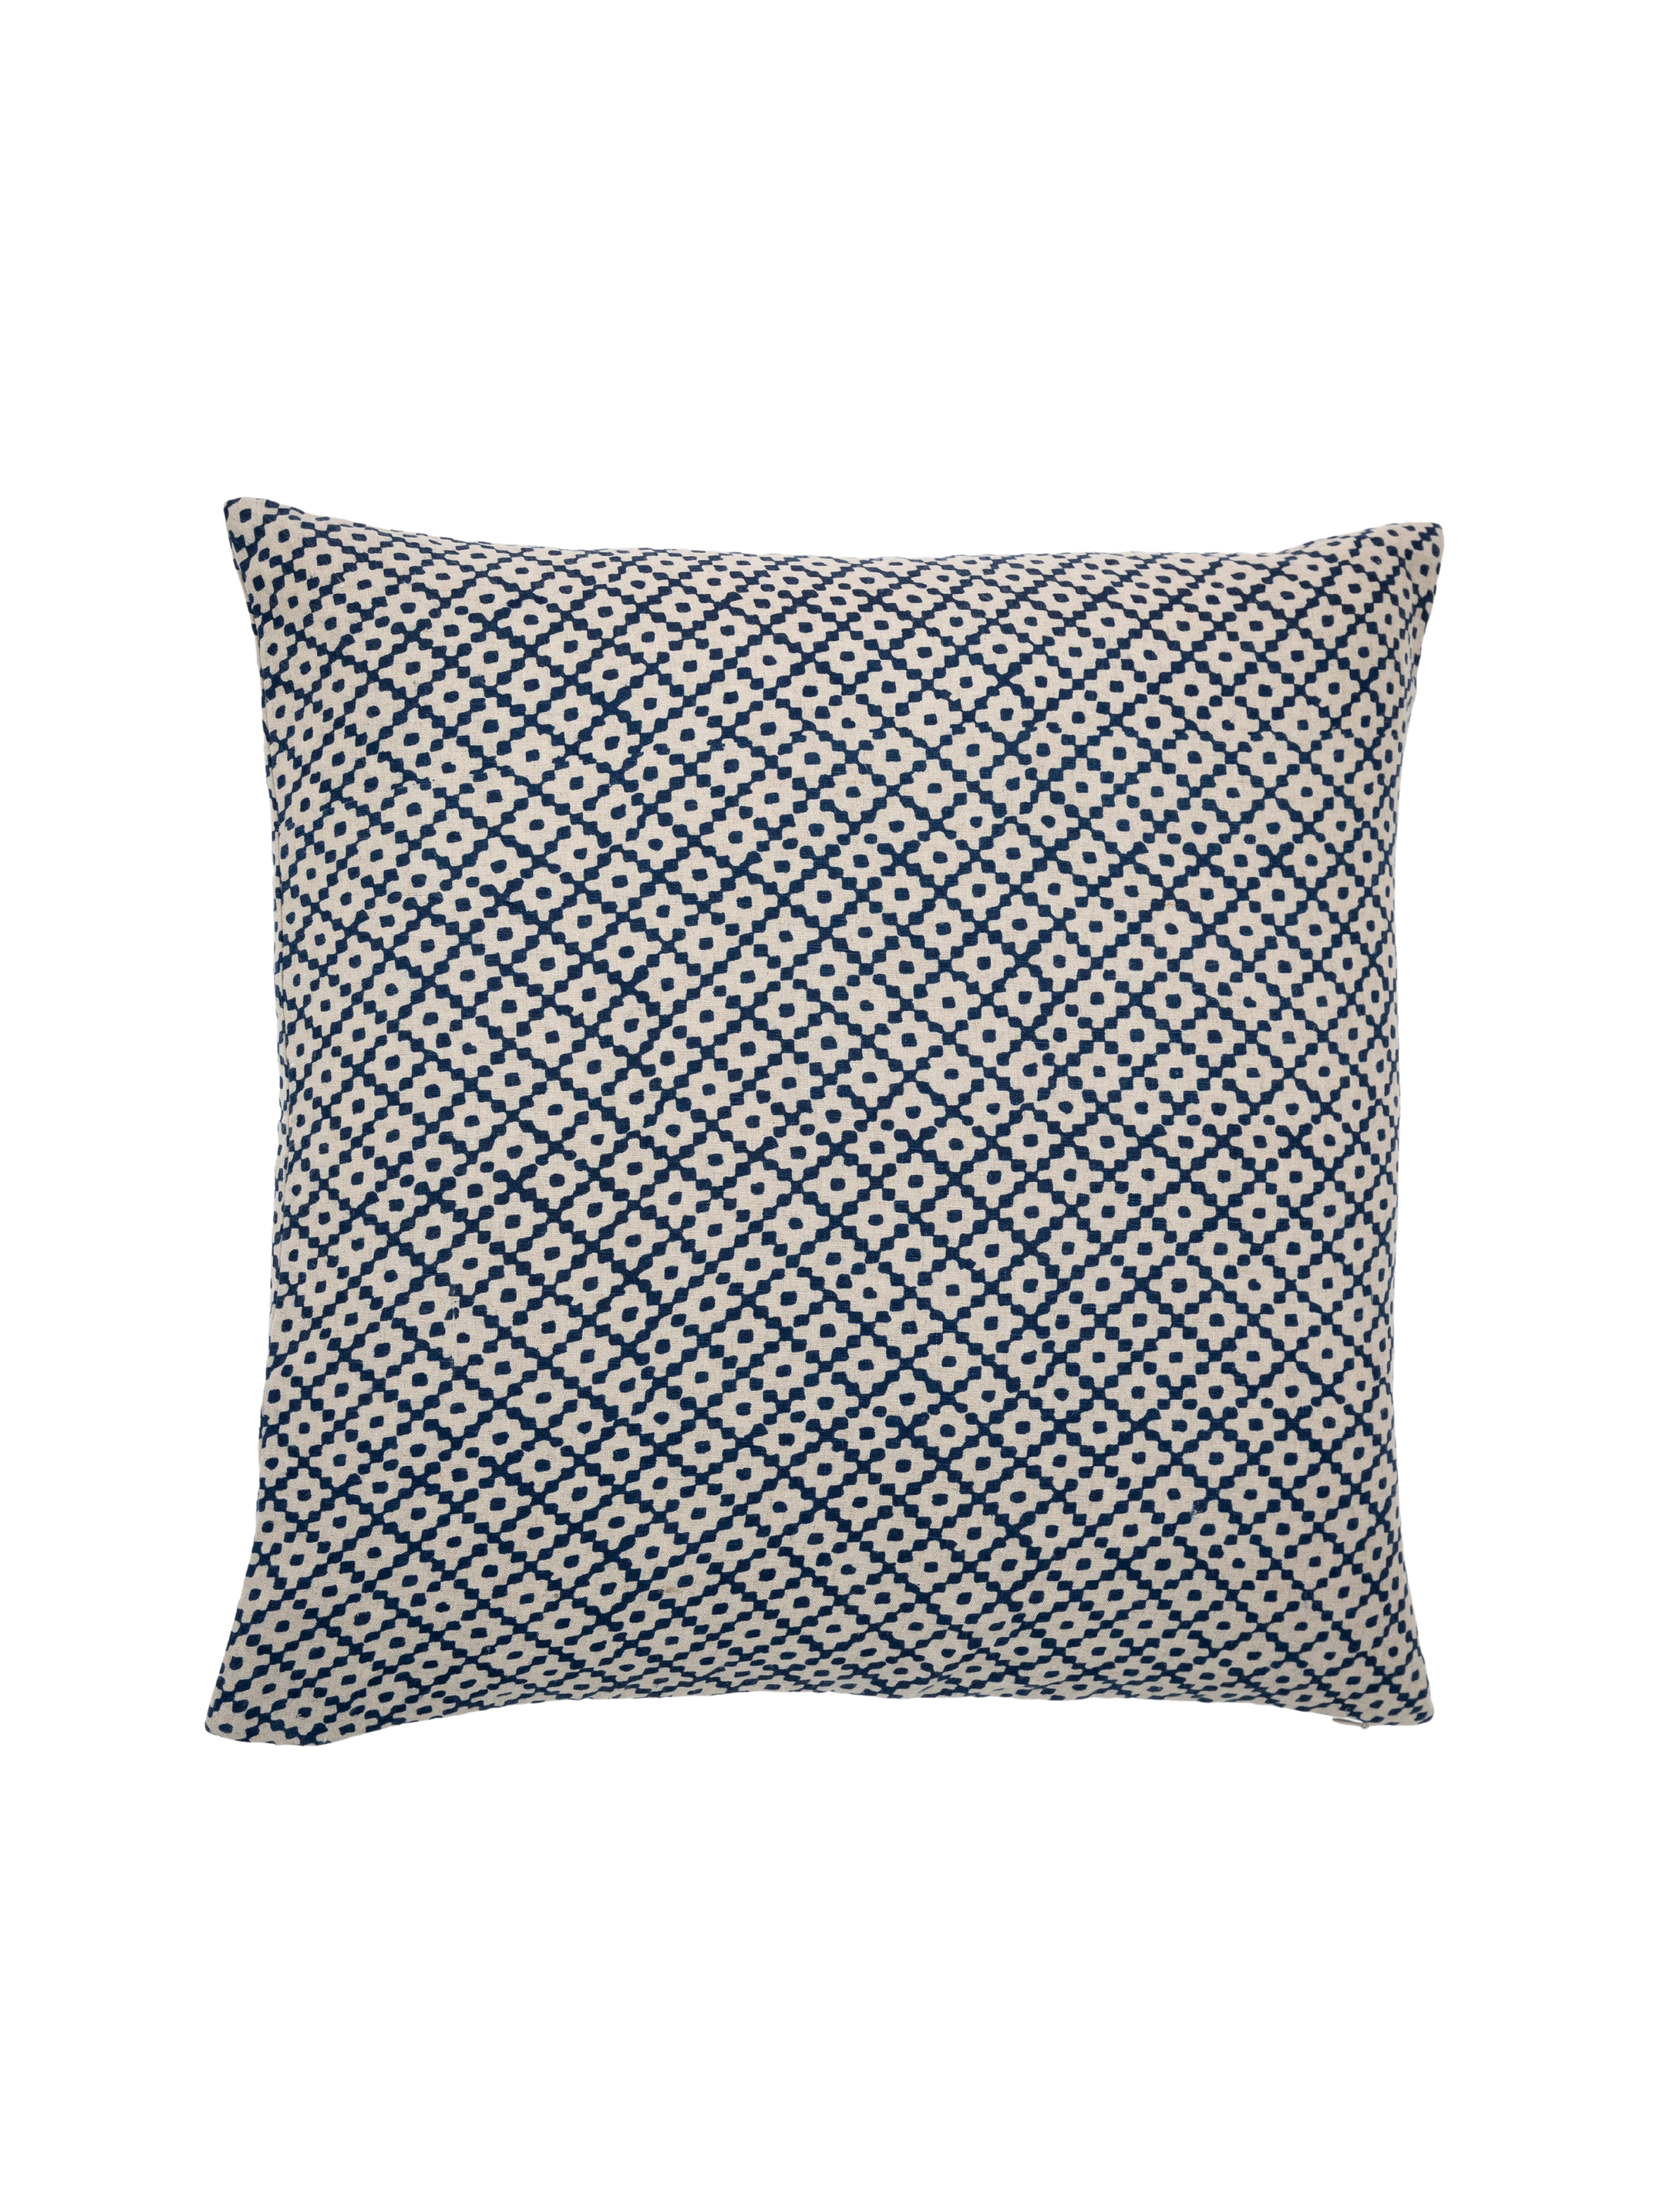 Kenya Indigo Decorative Pillow